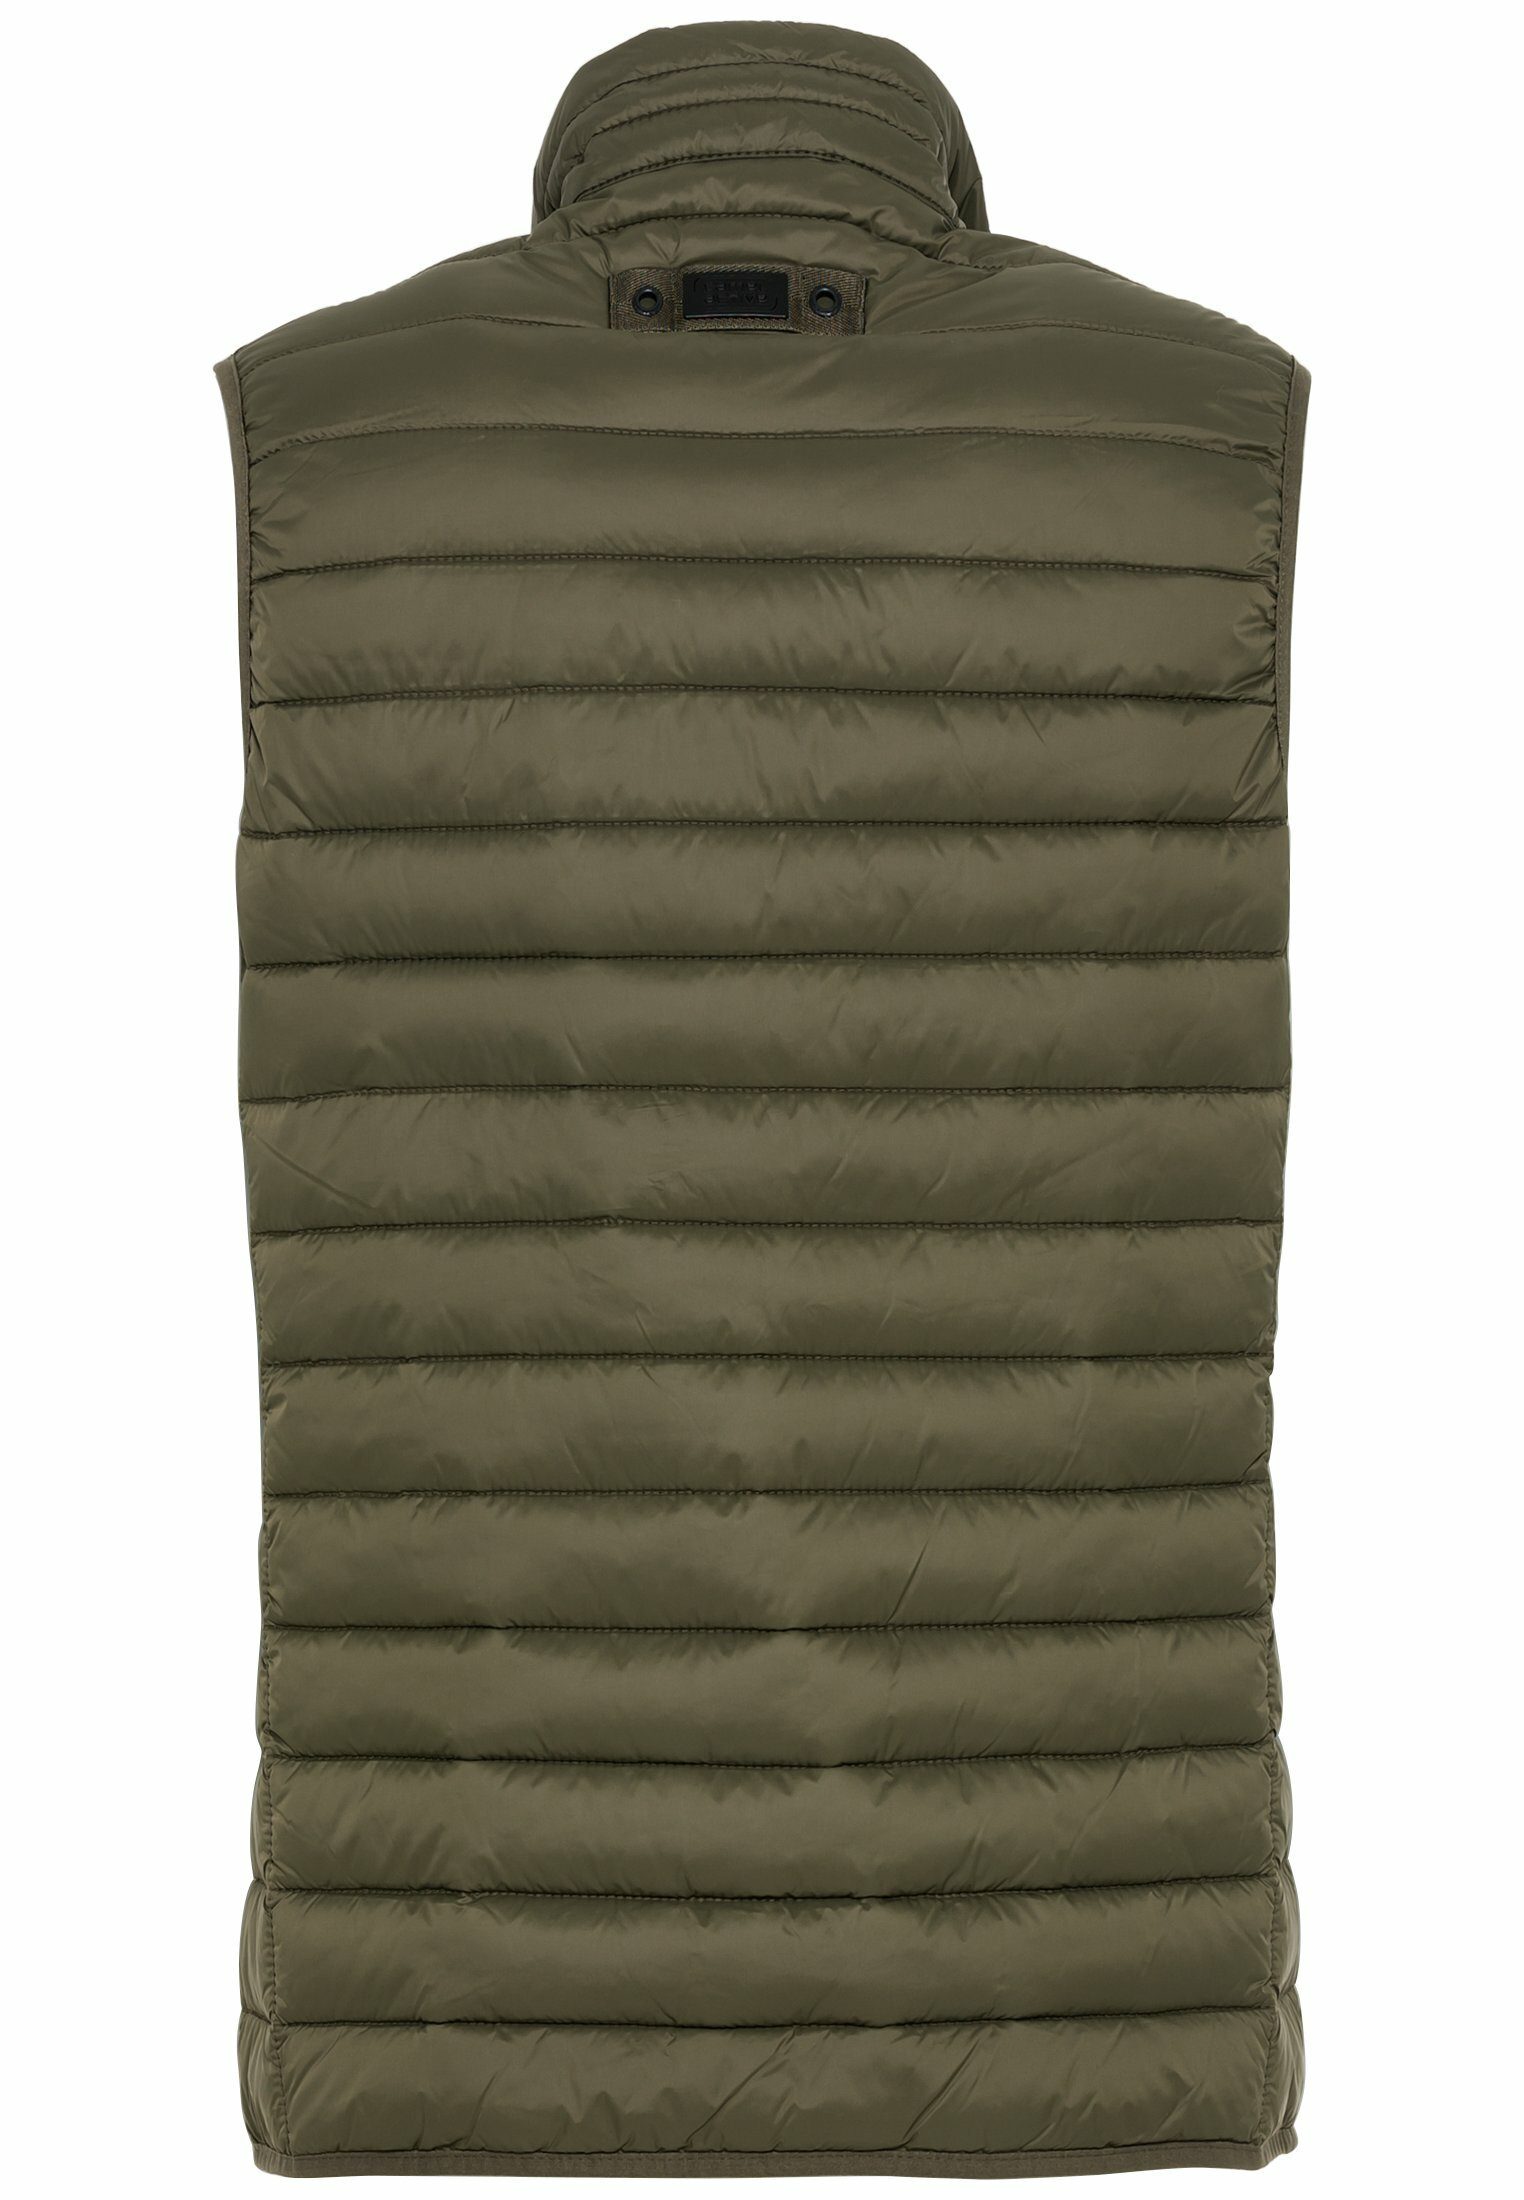 Olive-Braun Steppweste Stehkragen horizontaler camel Polyester aus active Steppung mit mit recyceltem